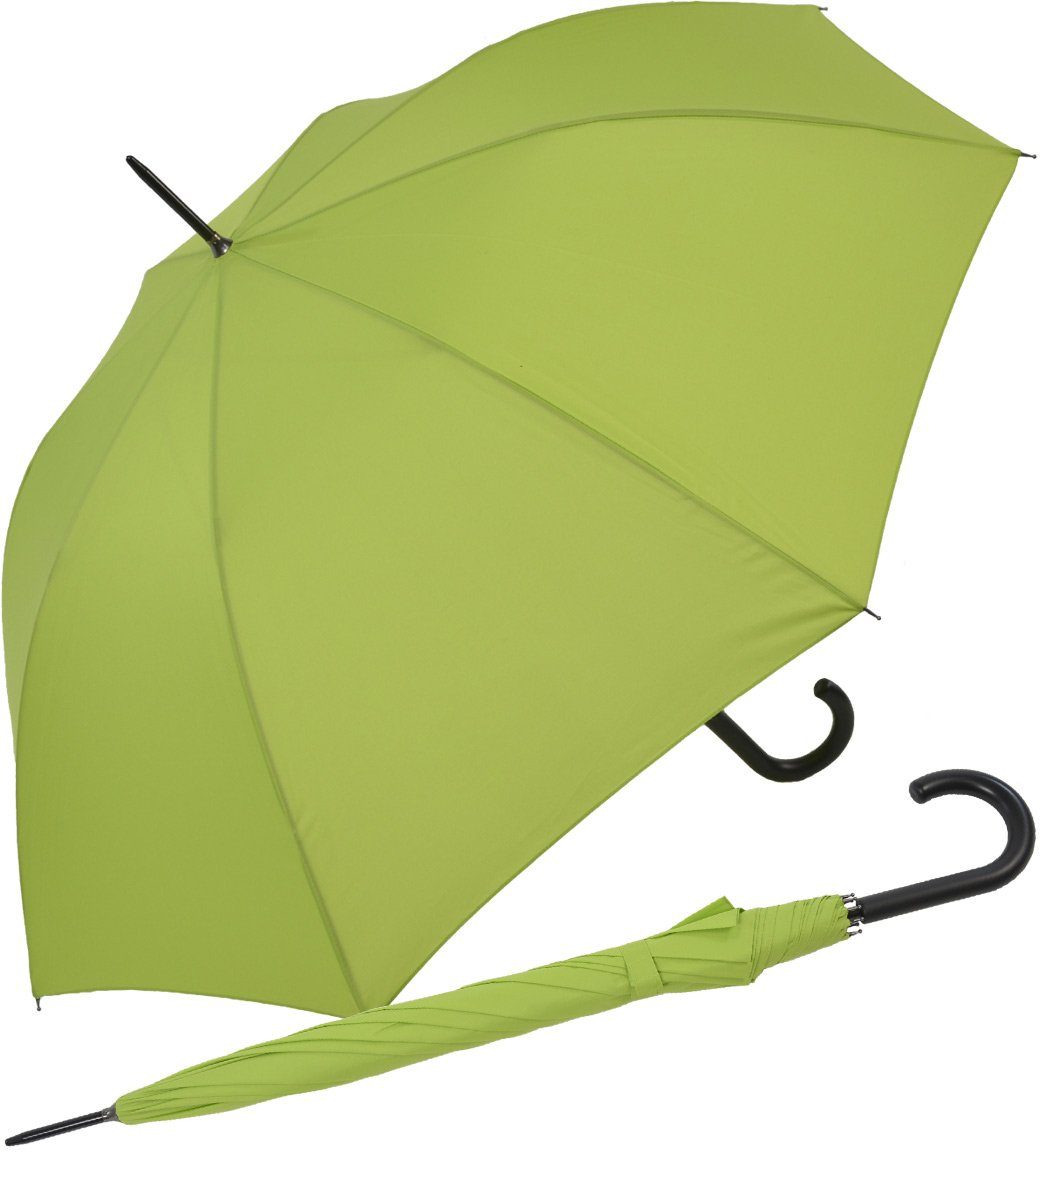 RS-Versand Langregenschirm großer stabiler Regenschirm mit Auf-Automatik, für Damen und Herren in vielen modischen Farben hellgrün